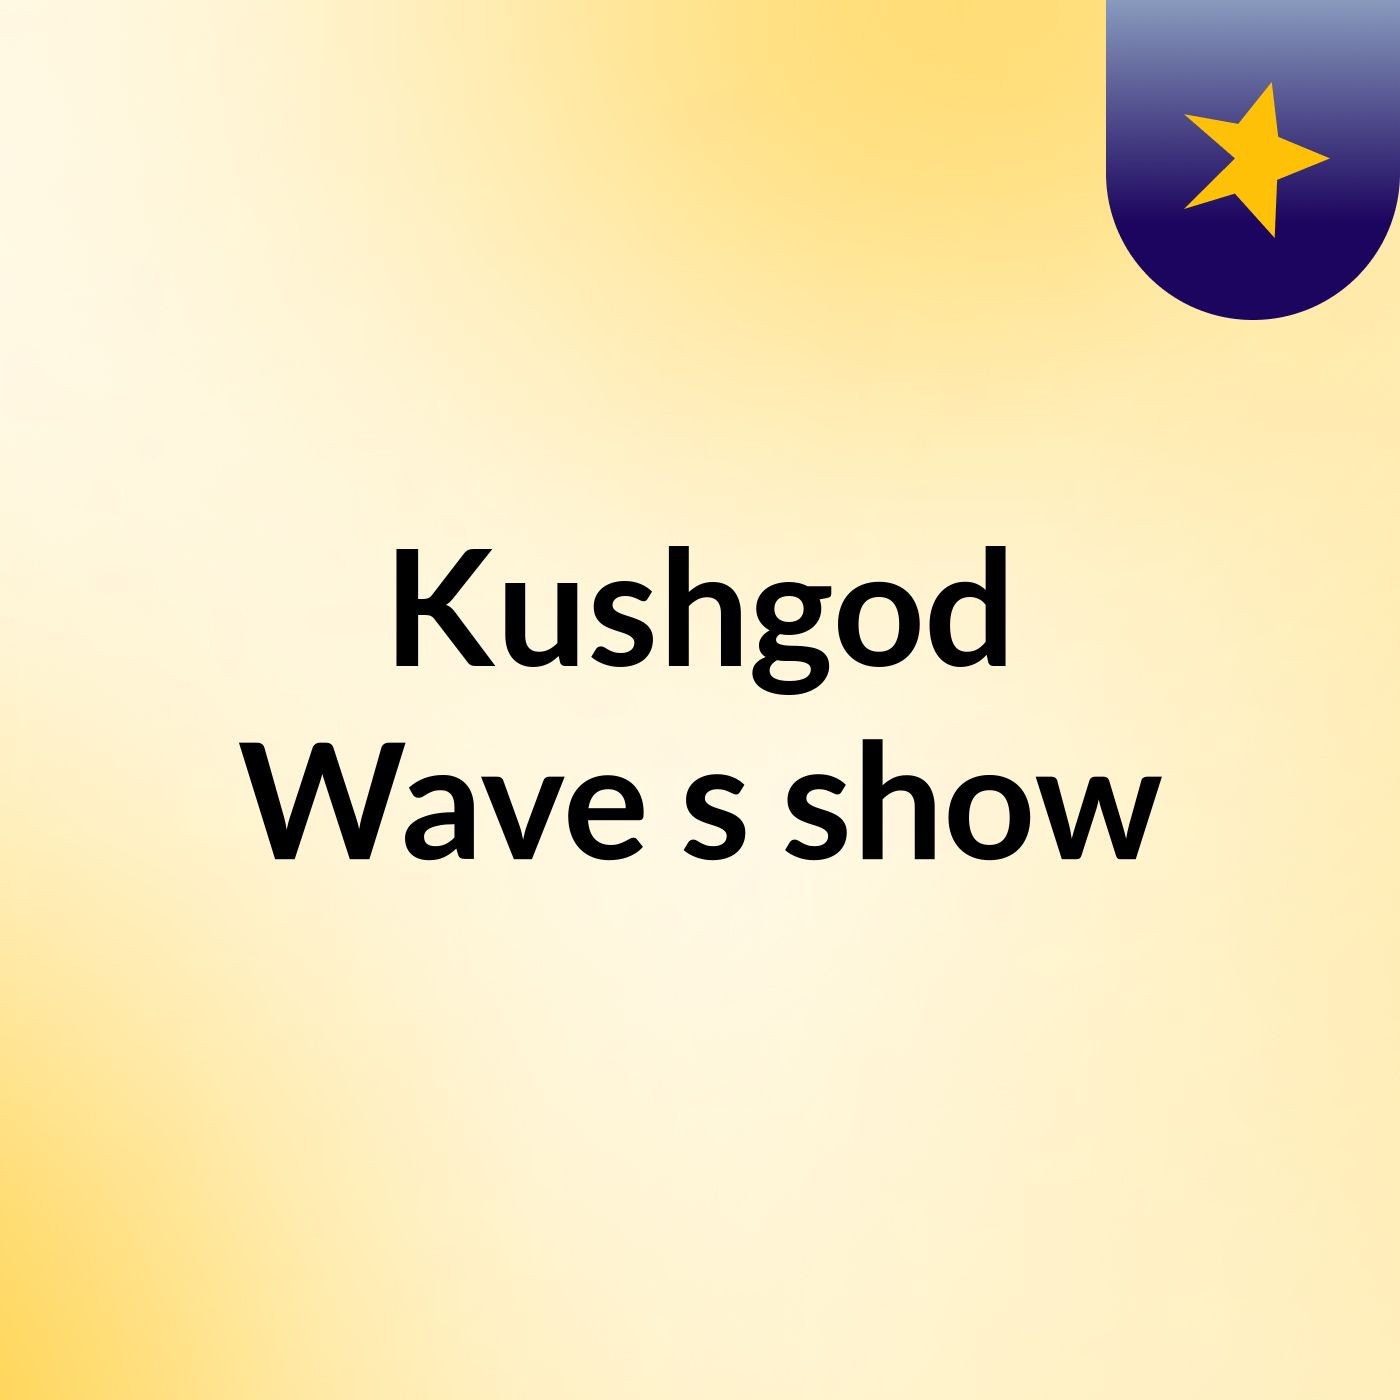 Kushgod Wave's show